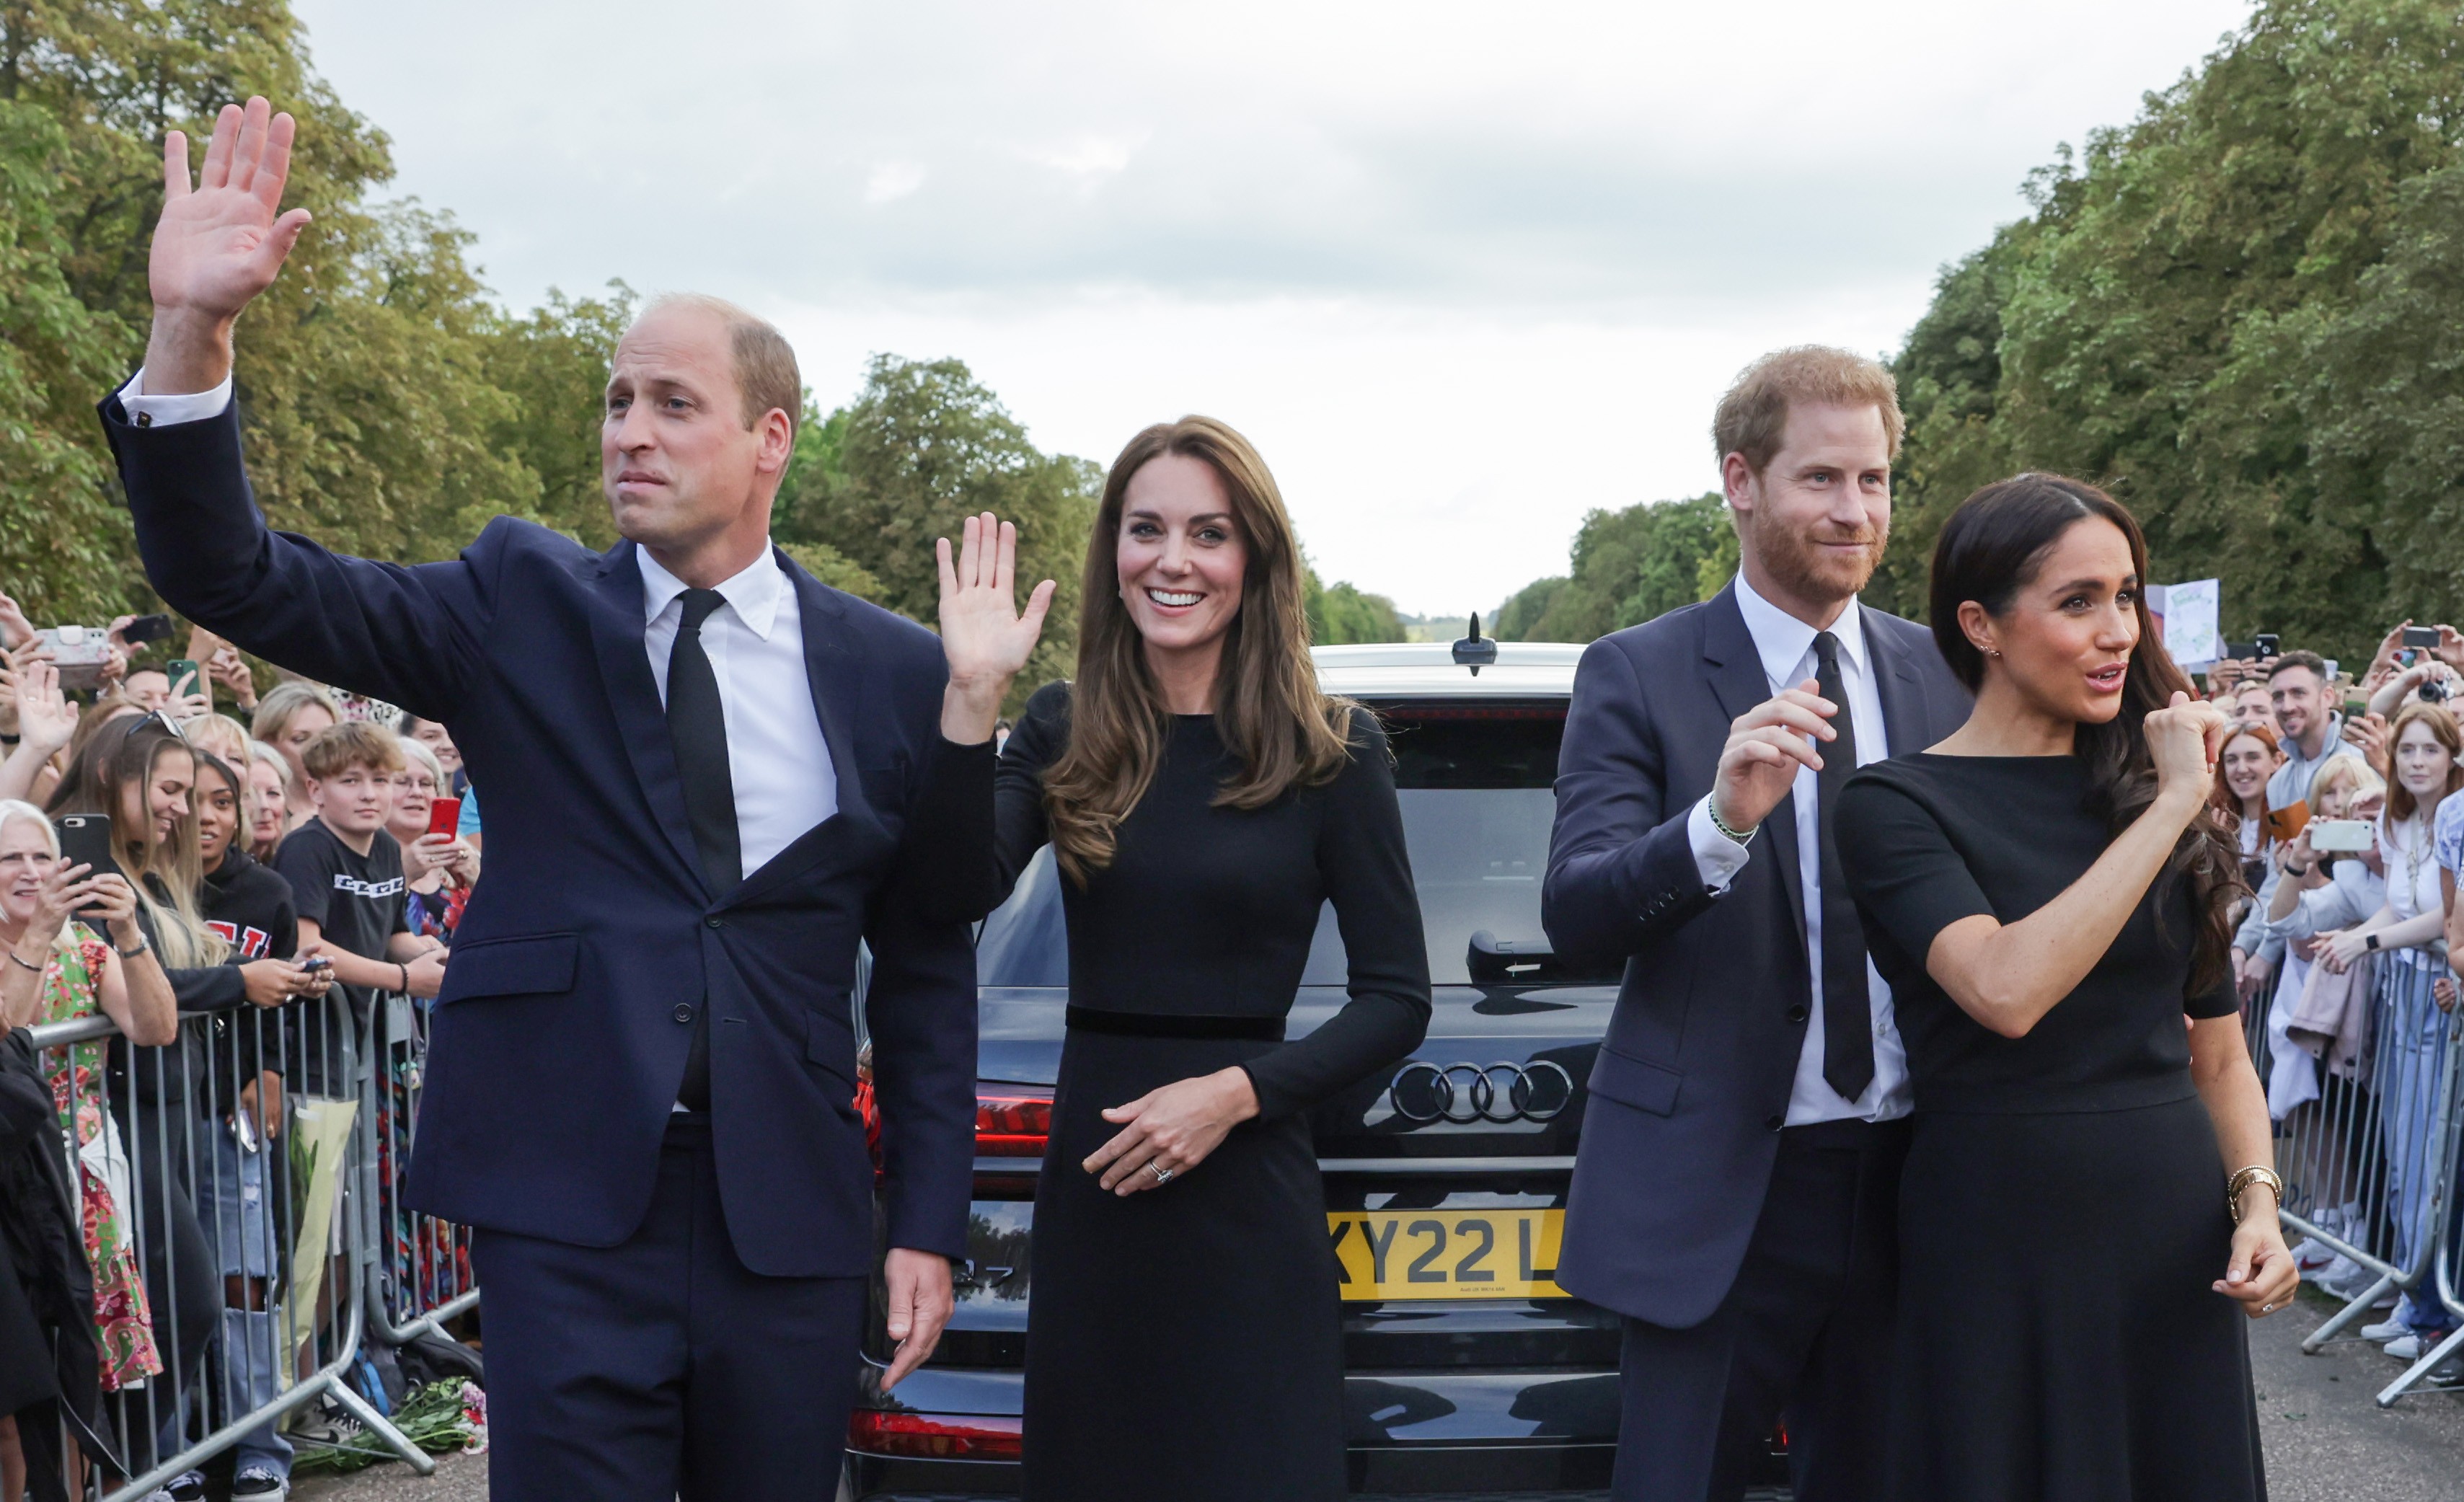 Os príncipes William e Harry com suas respectivas esposas, a Princesa Kate Middleton e a atriz e Duquesa Meghan Markle, após conversarem com os súditos presentes nos portões do Palácio de Windsor (Foto: Getty Images)